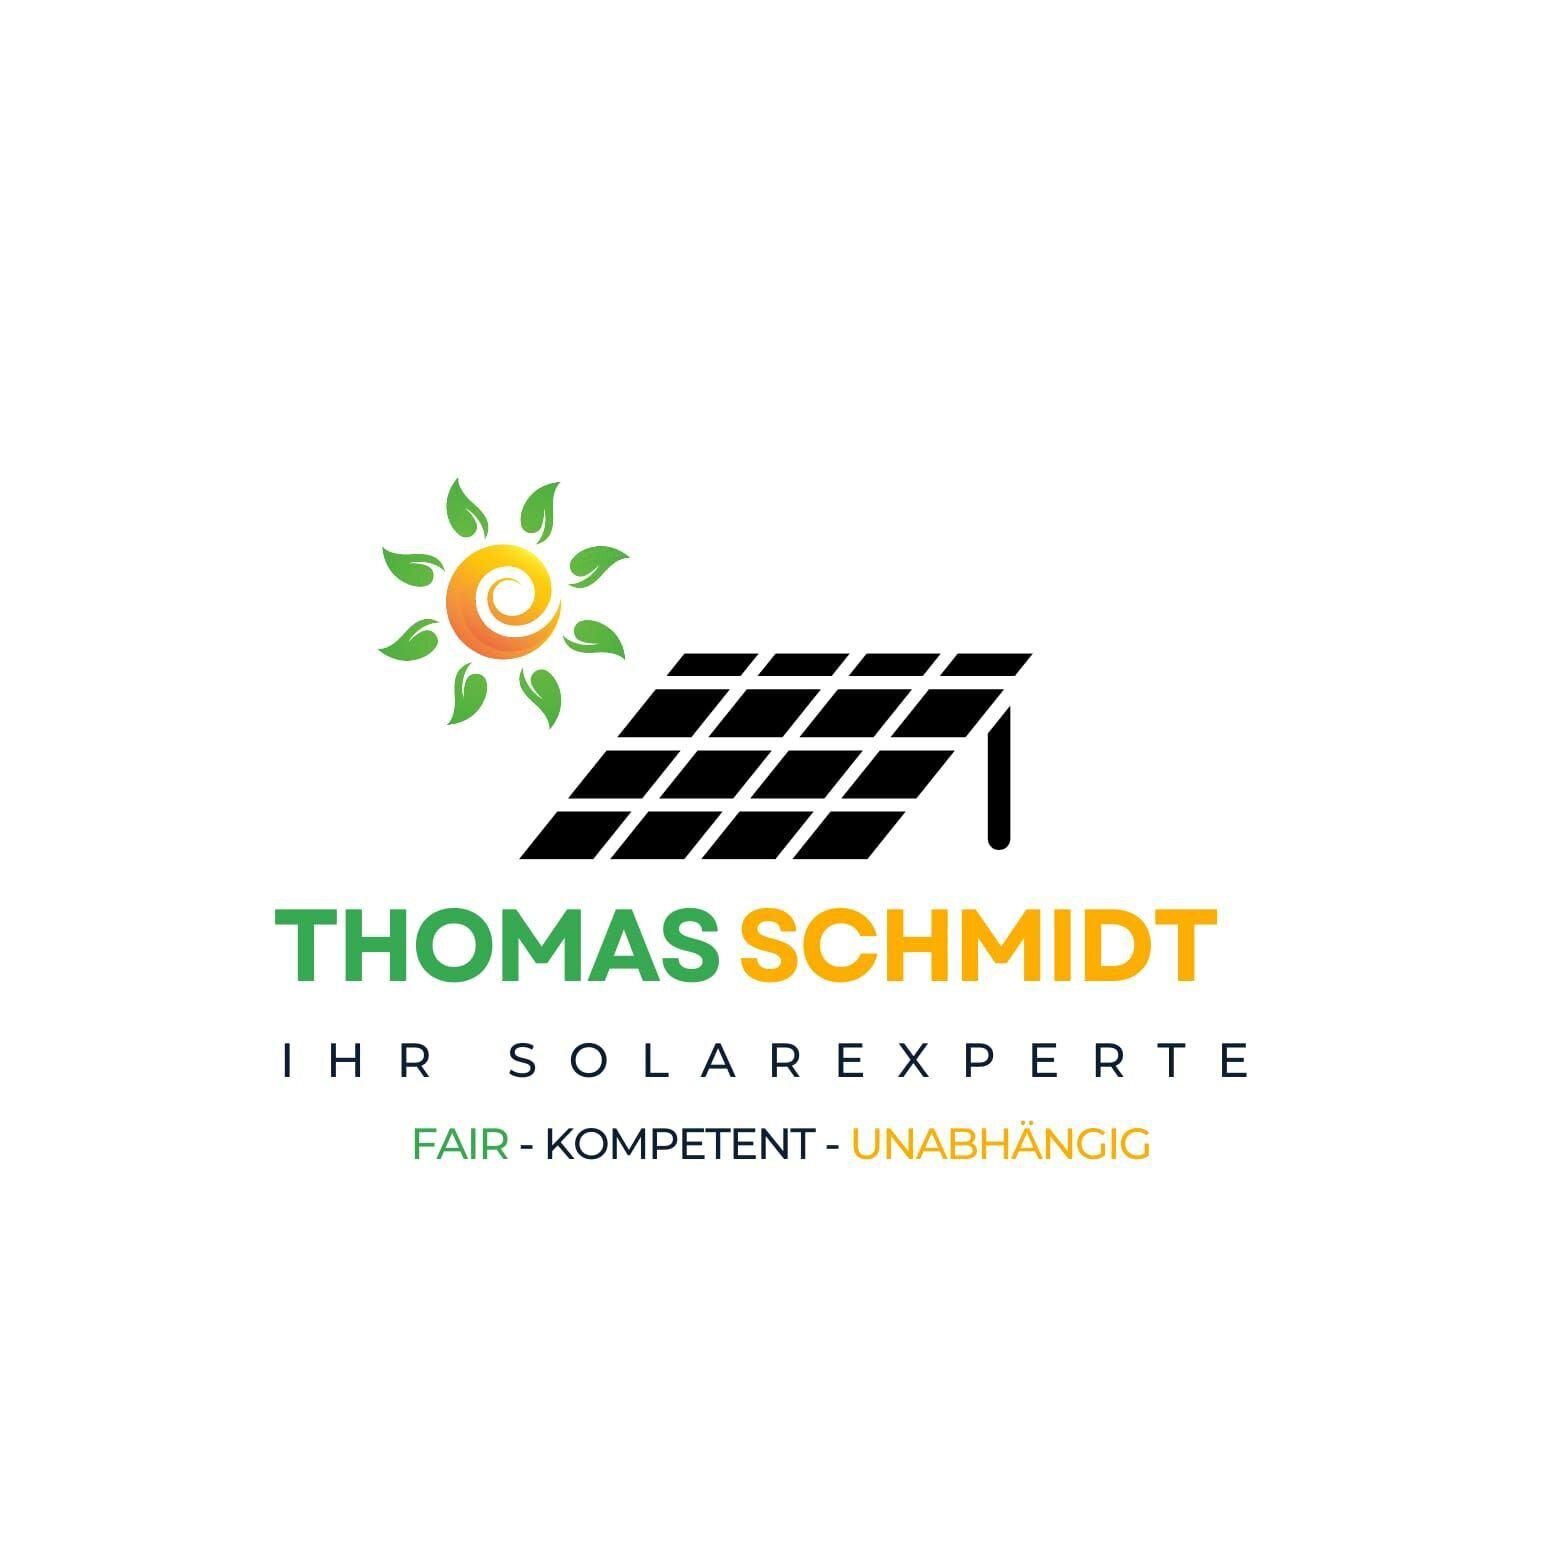 Kundenbild groß 2 IHR-SOLAREXPERTE Thomas Schmidt fair kompetent unabhängig